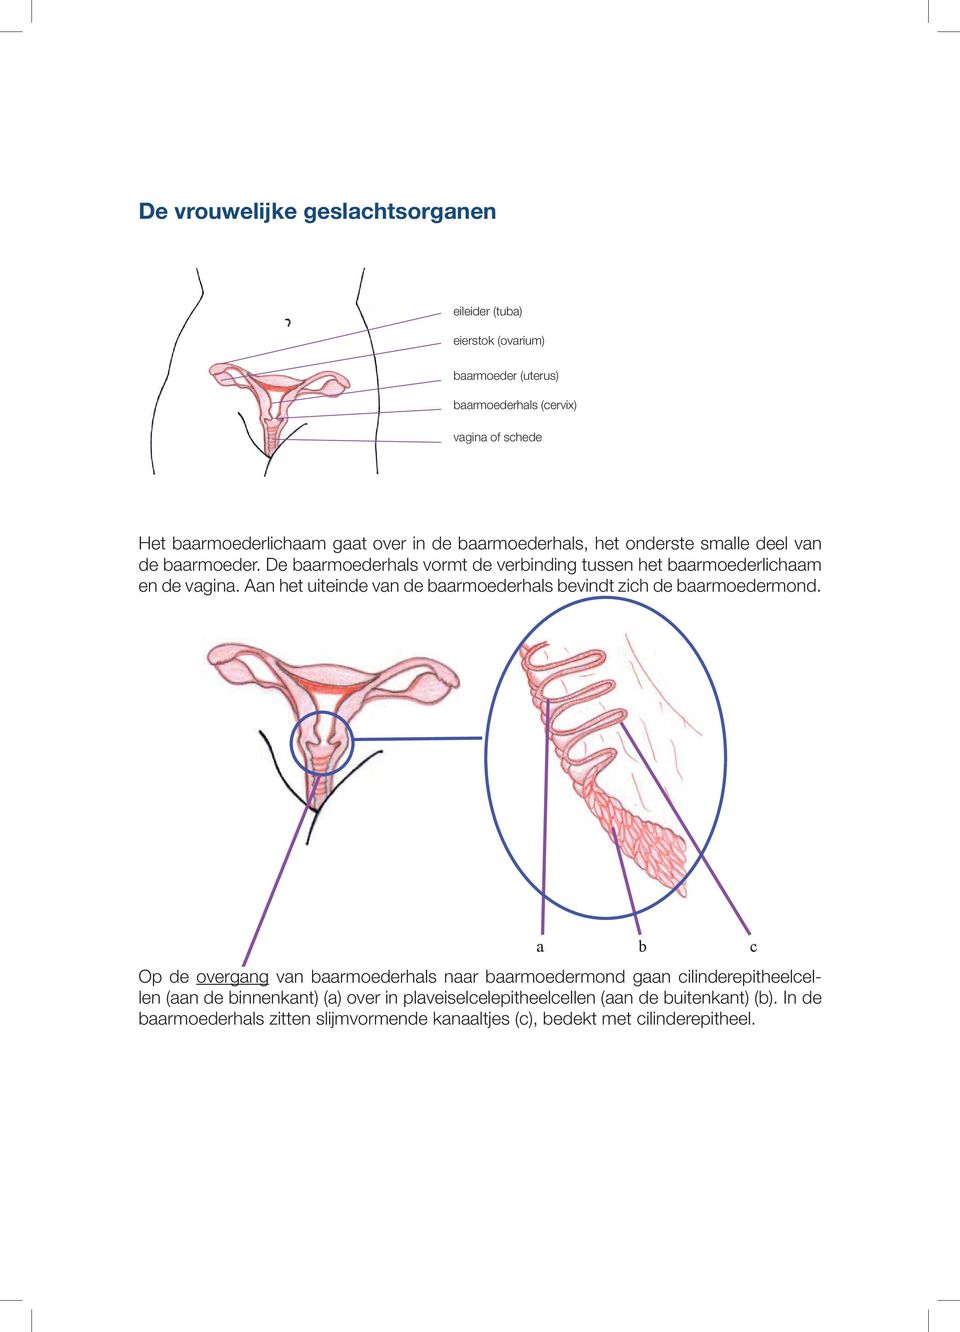 gaat over in de baarmoederhals, het onderste smalle deel van vagina of schede de baarmoeder. De baarmoederhals vormt de verbinding tussen het baarmoederlichaam en de vagina.